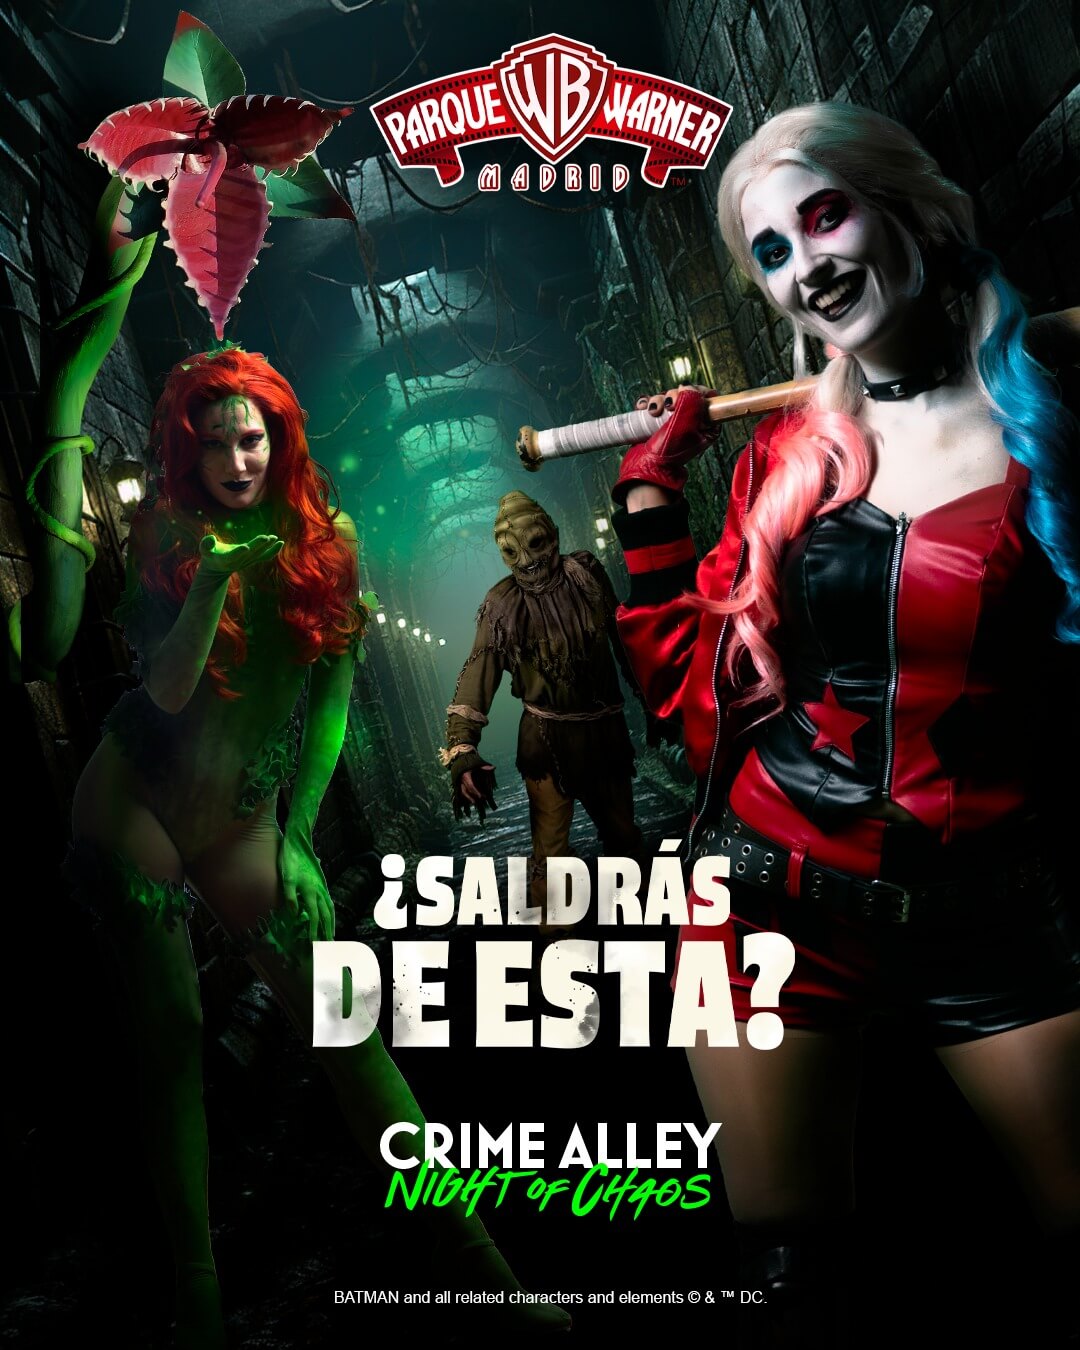 Crime Alley Nuevo pasaje terror Halloween 2023 Parque Warner imagen promocional 2